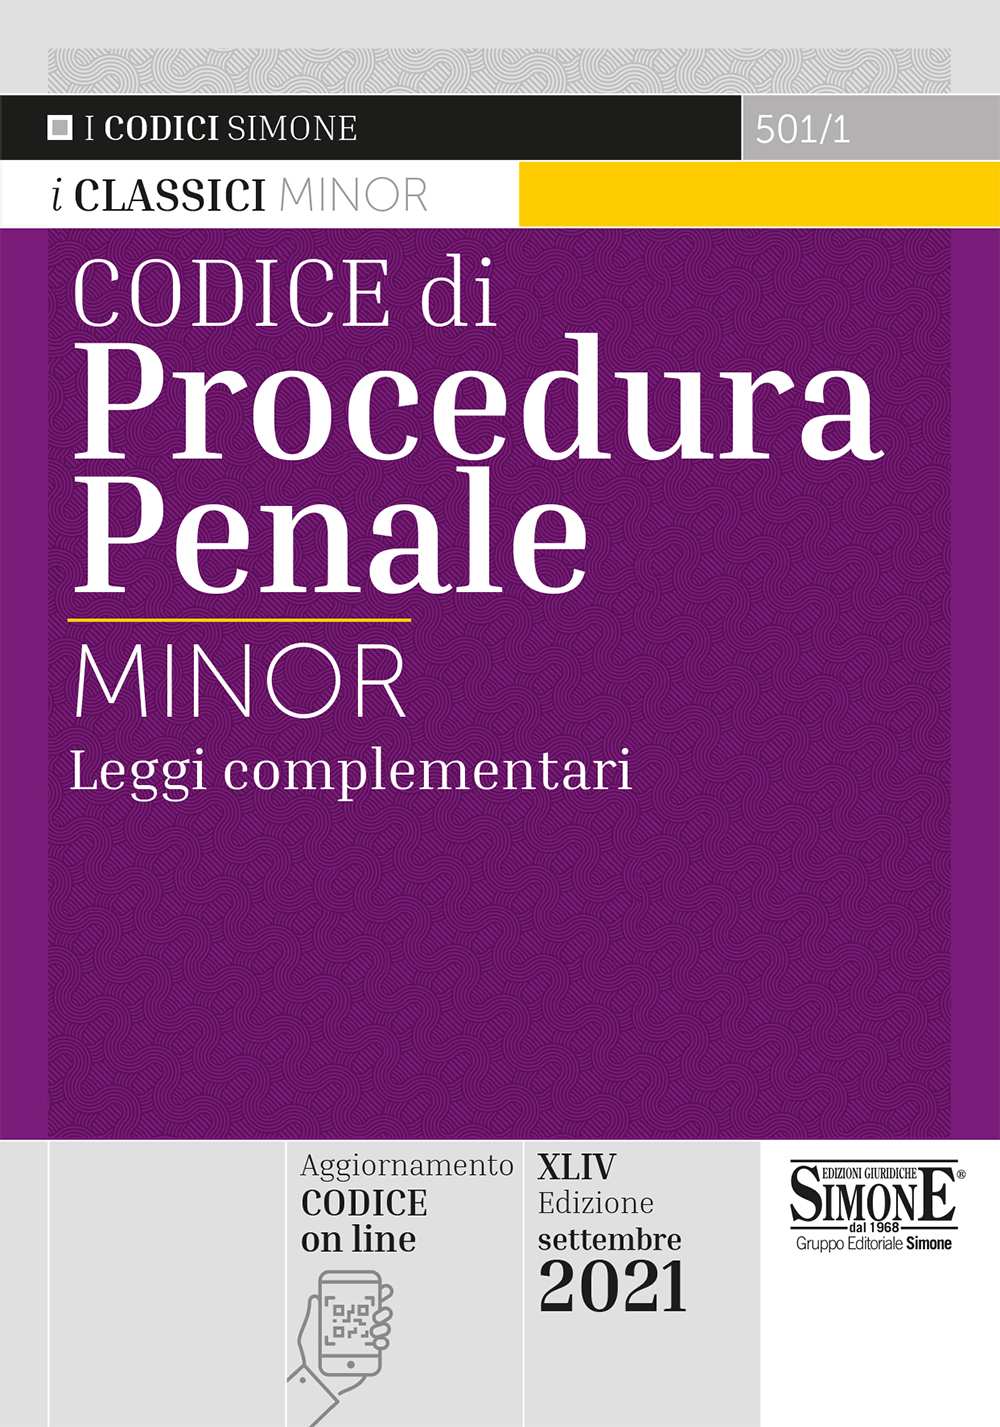 Codice di Procedura Penale minor